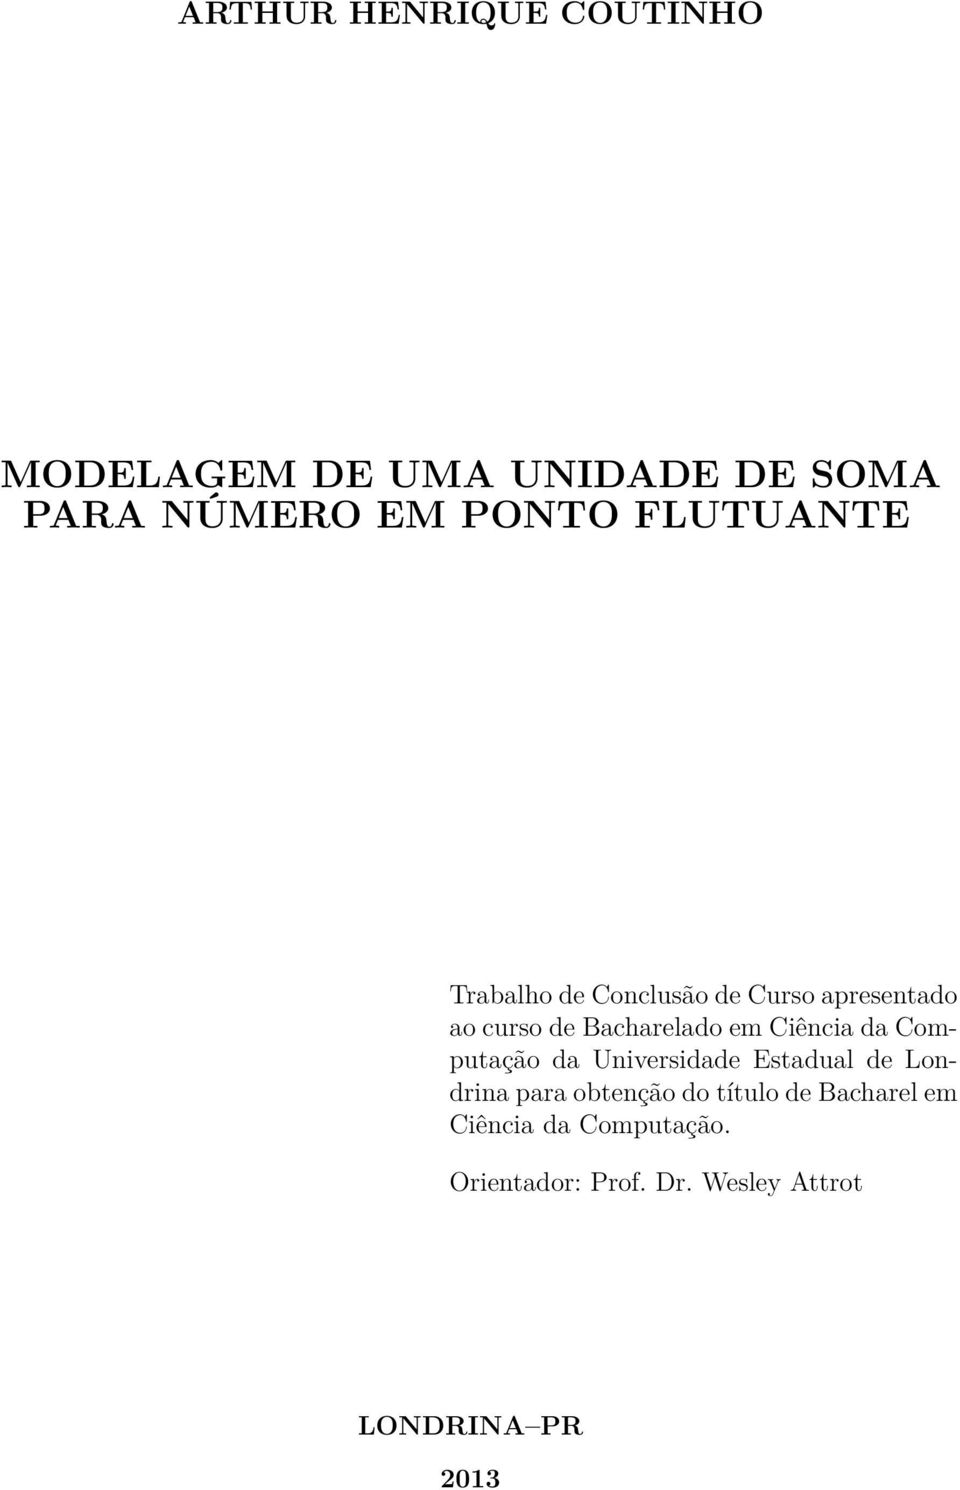 Ciência da Computação da Universidade Estadual de Londrina para obtenção do título